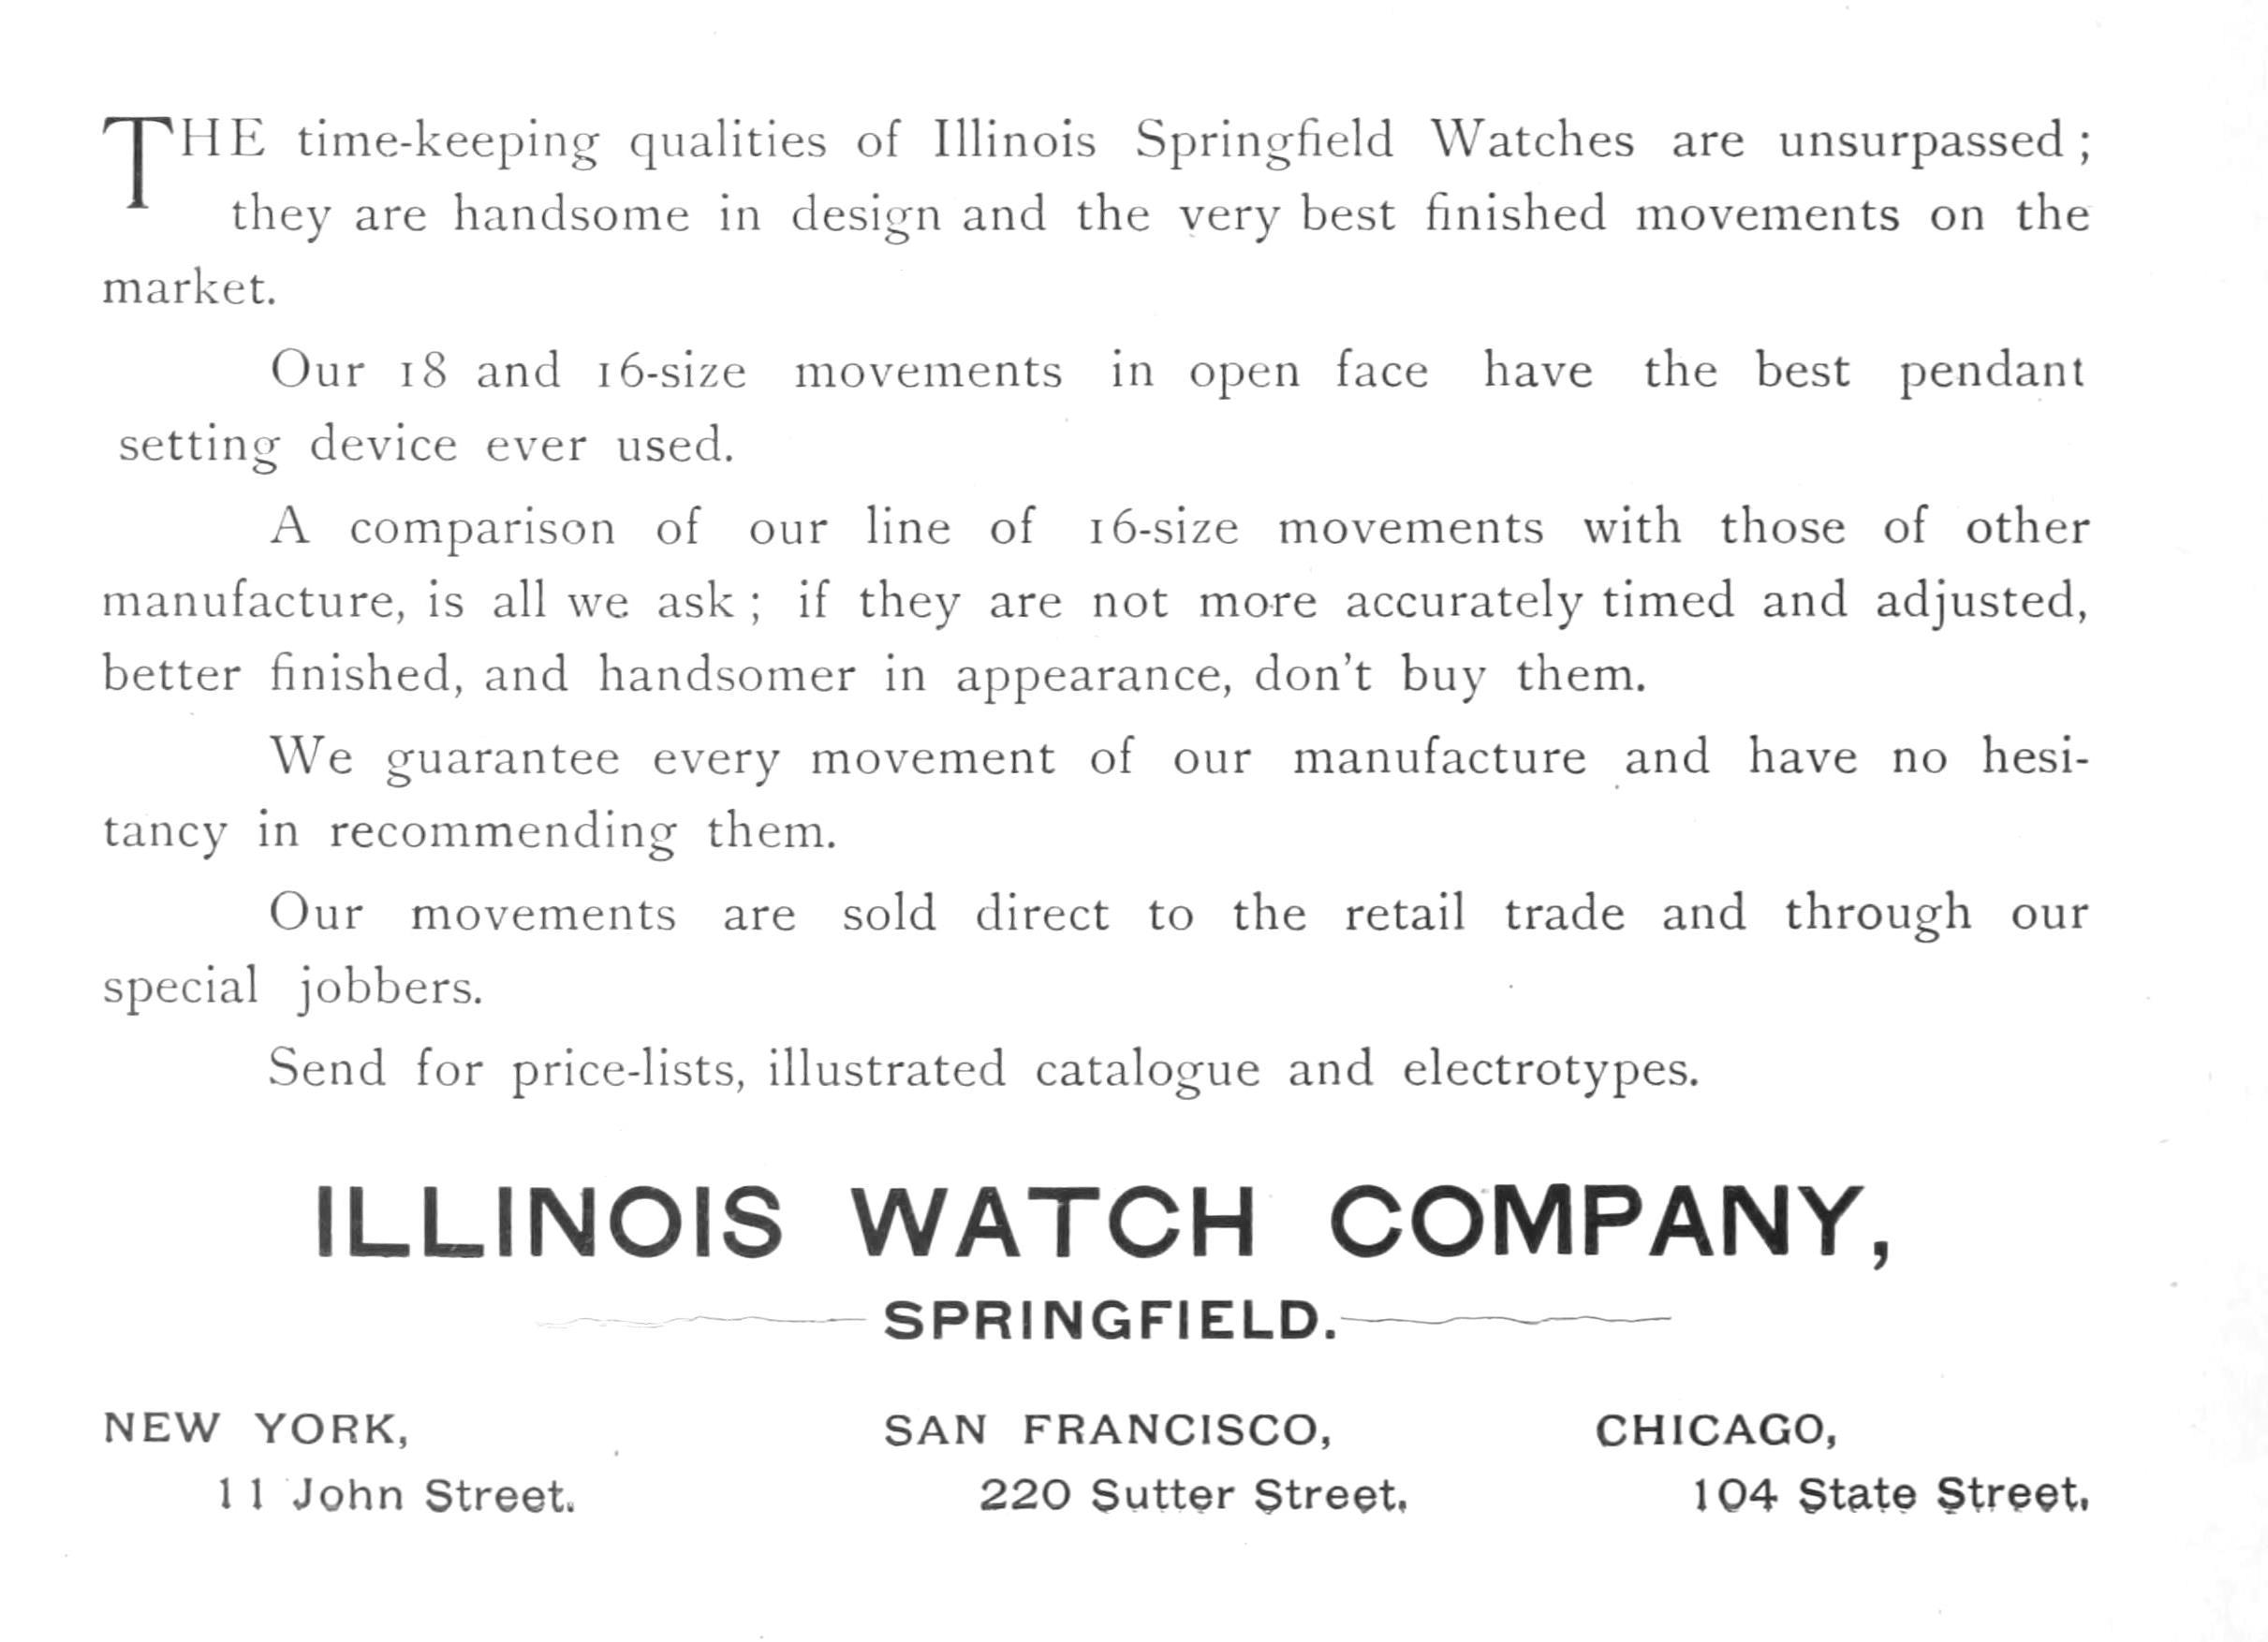 Illinois Watch 1891 1.jpg